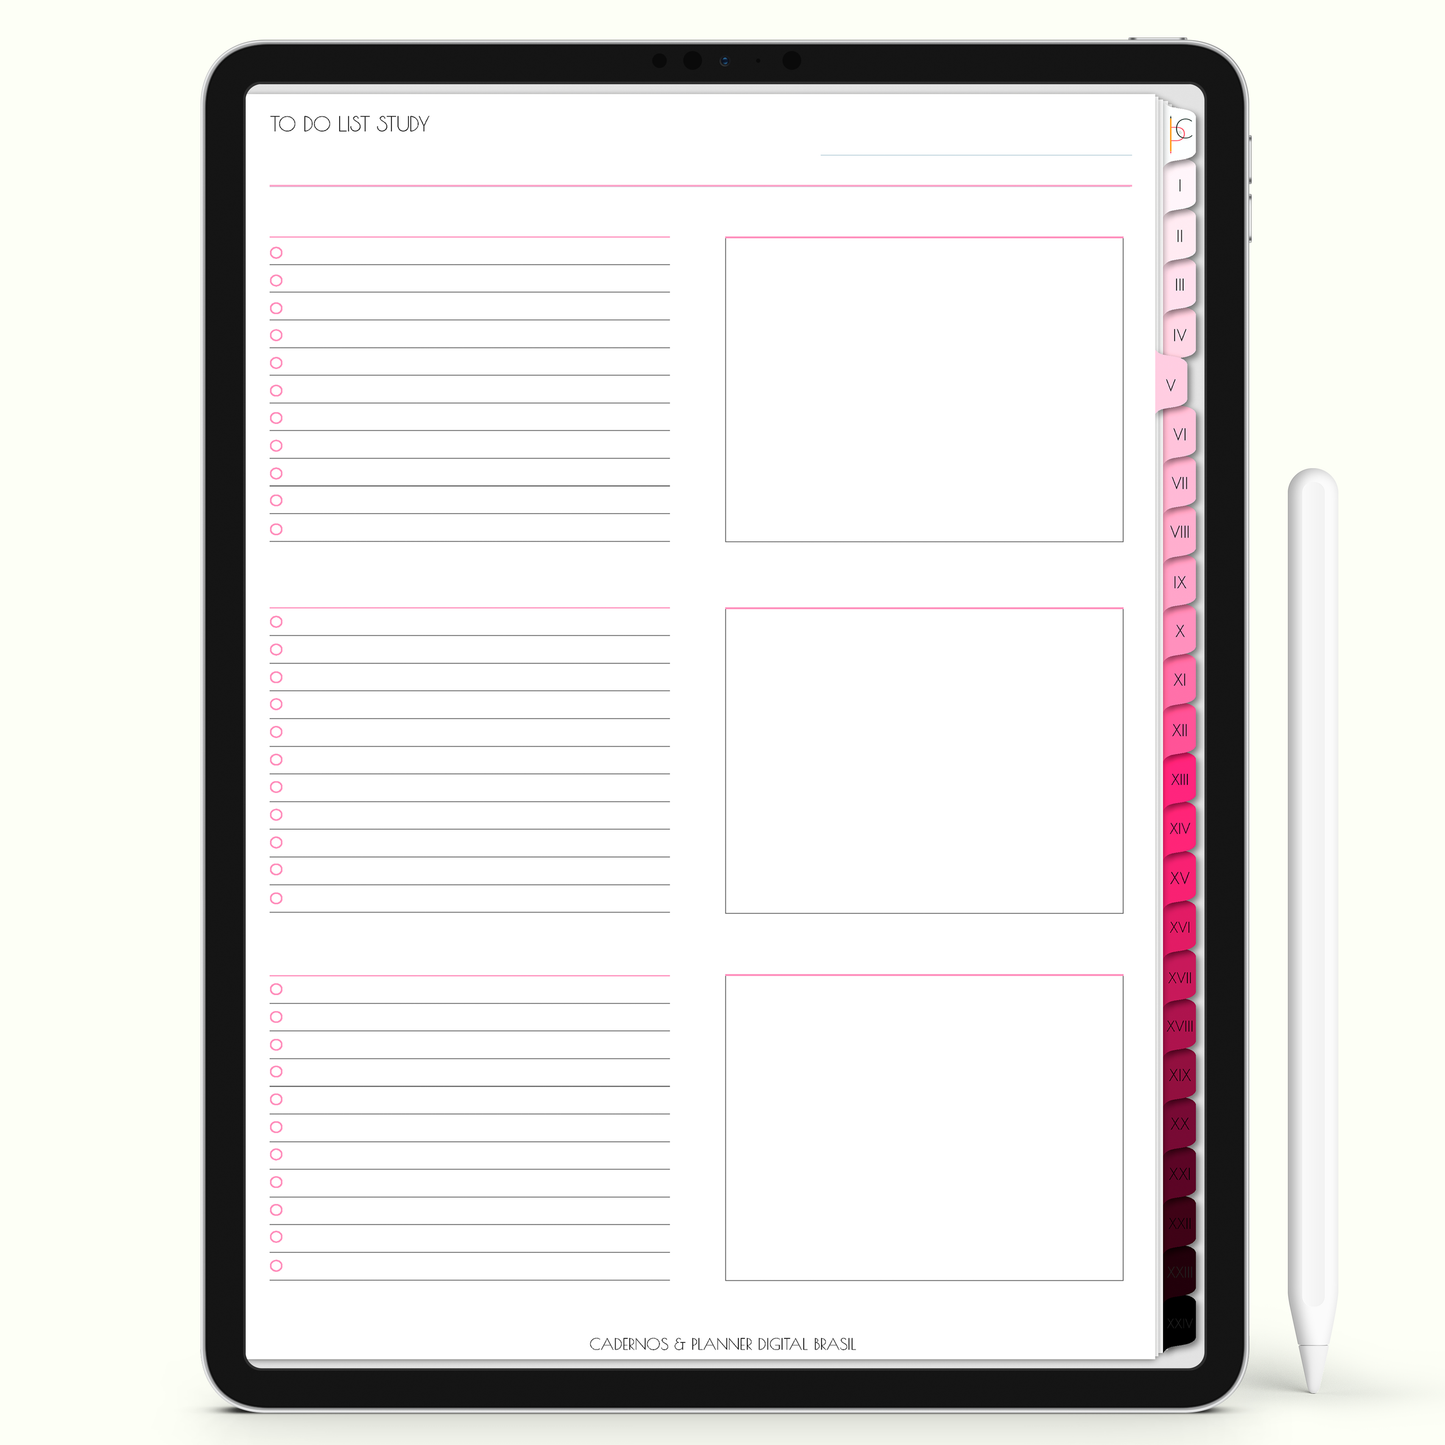 Caderno Digital Blush Belo Dia 24 Matérias • iPad e Tablet Android • Download instantâneo • Sustentável